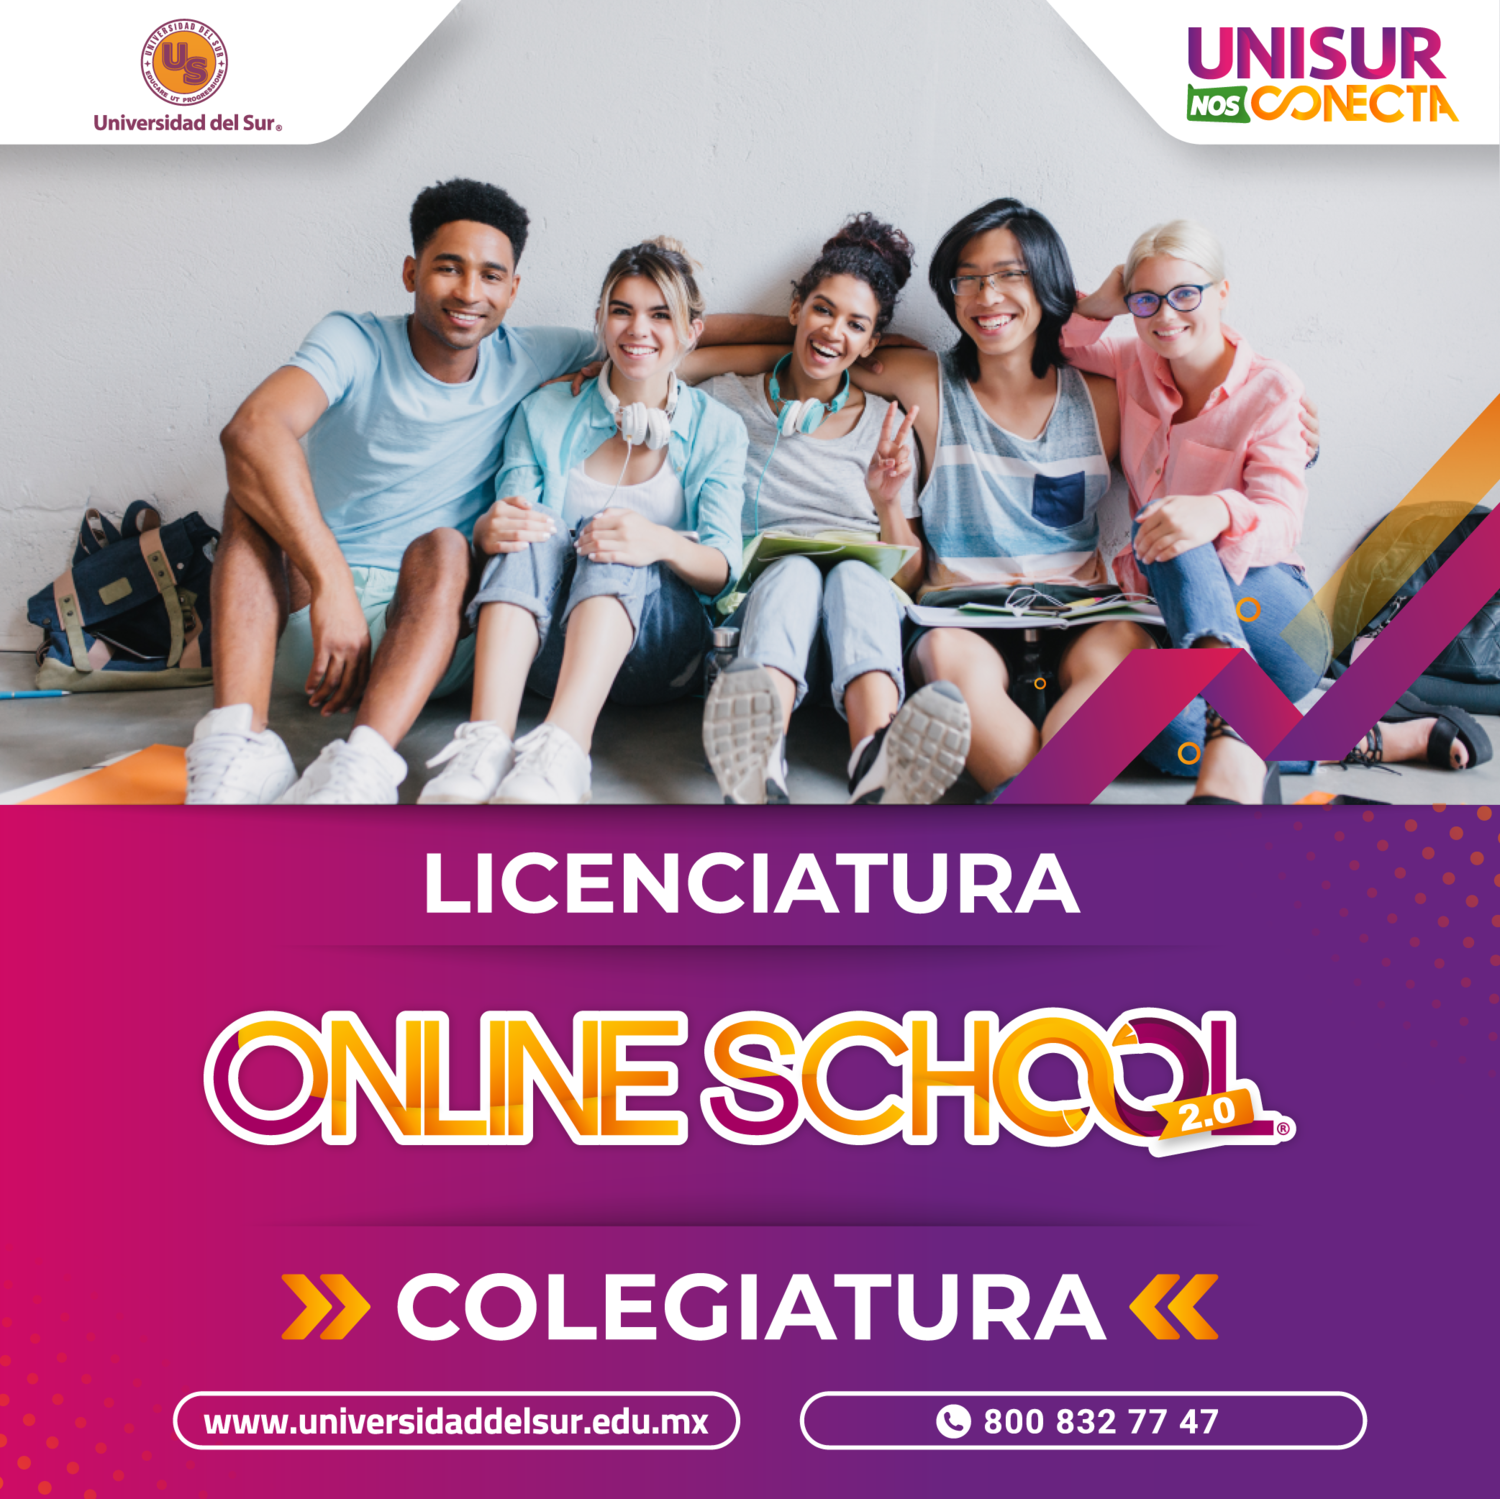 Licenciatura Online School 2.0 Colegiatura